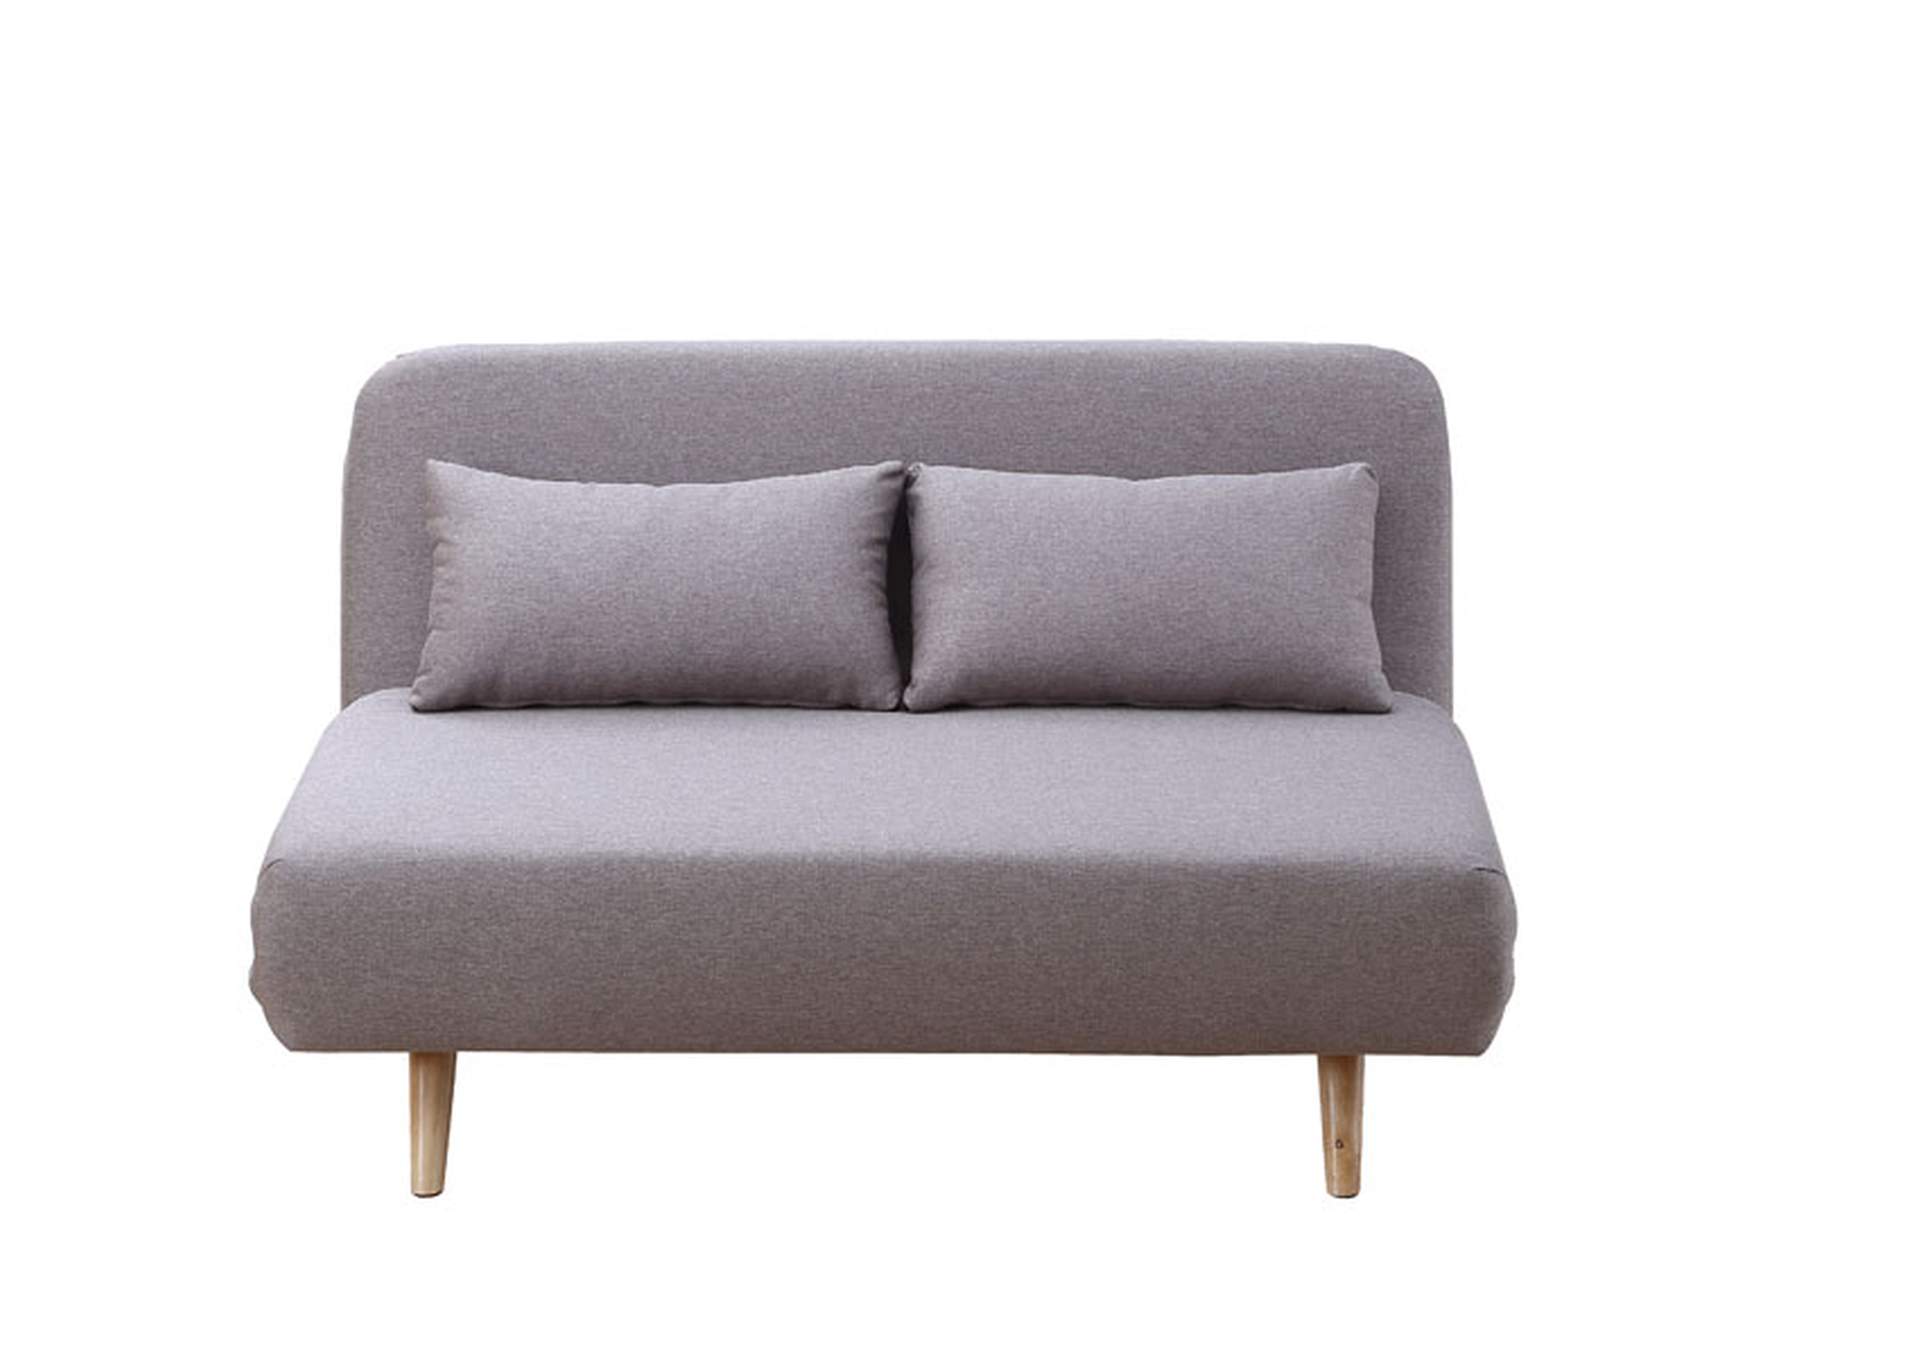 Premium Sofa Bed JK037-2 in Beige Fabric,J&M Furniture